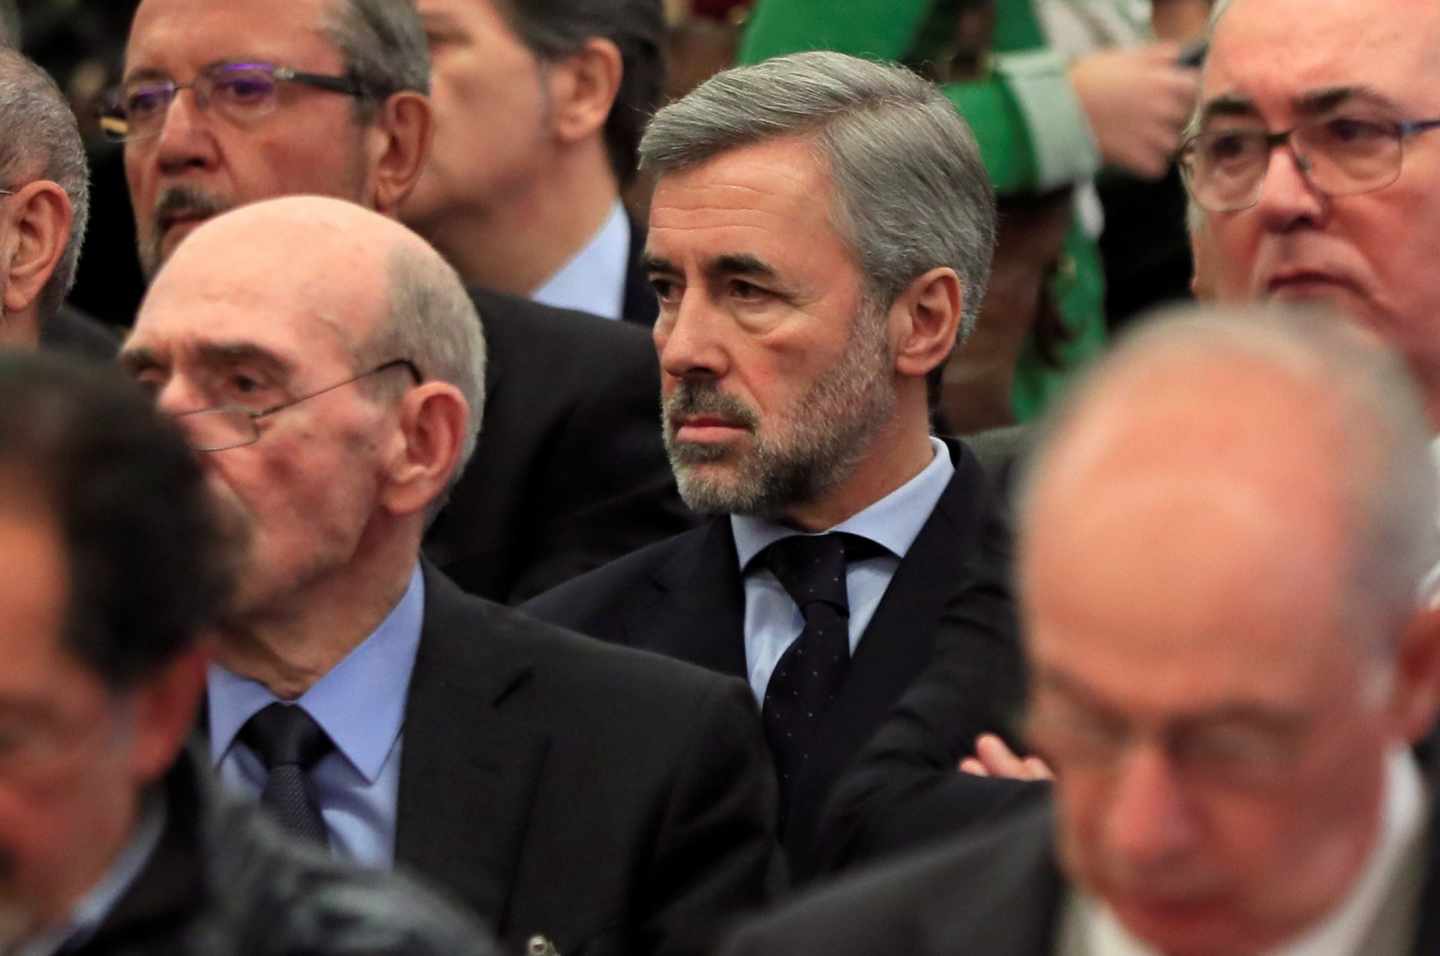 El jucio de Bankia se reanuda este lunes con el interrogatorio al exministro Acebes